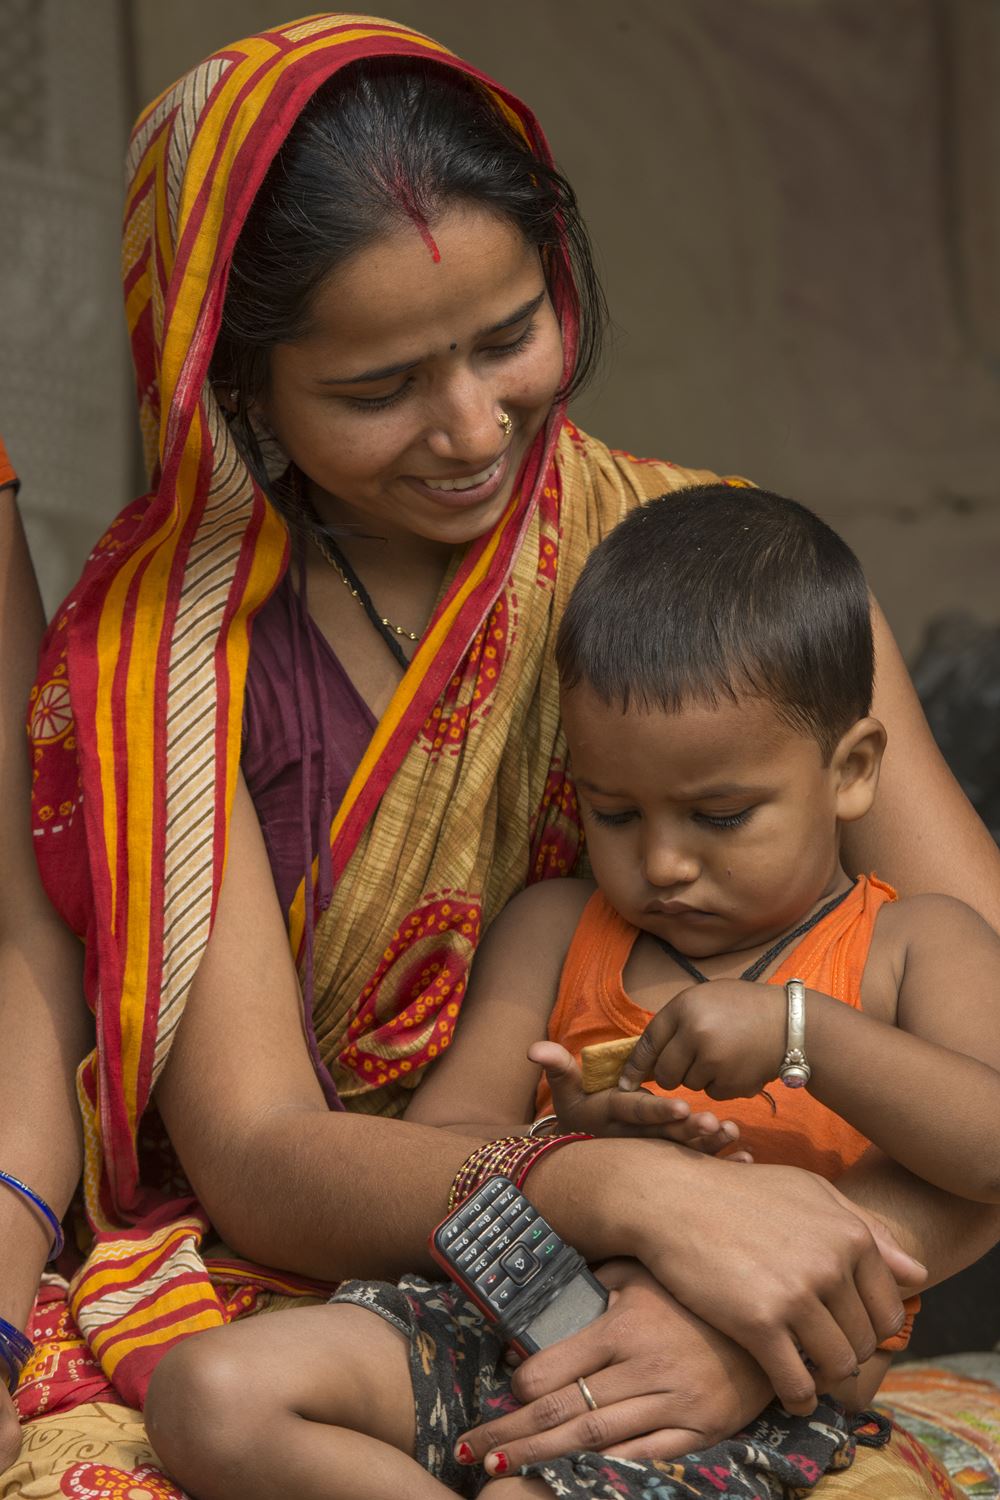 Eine junge Mutter mit ihrem kleinen Sohn auf dem Schoß (Quelle: Christian Nusch)